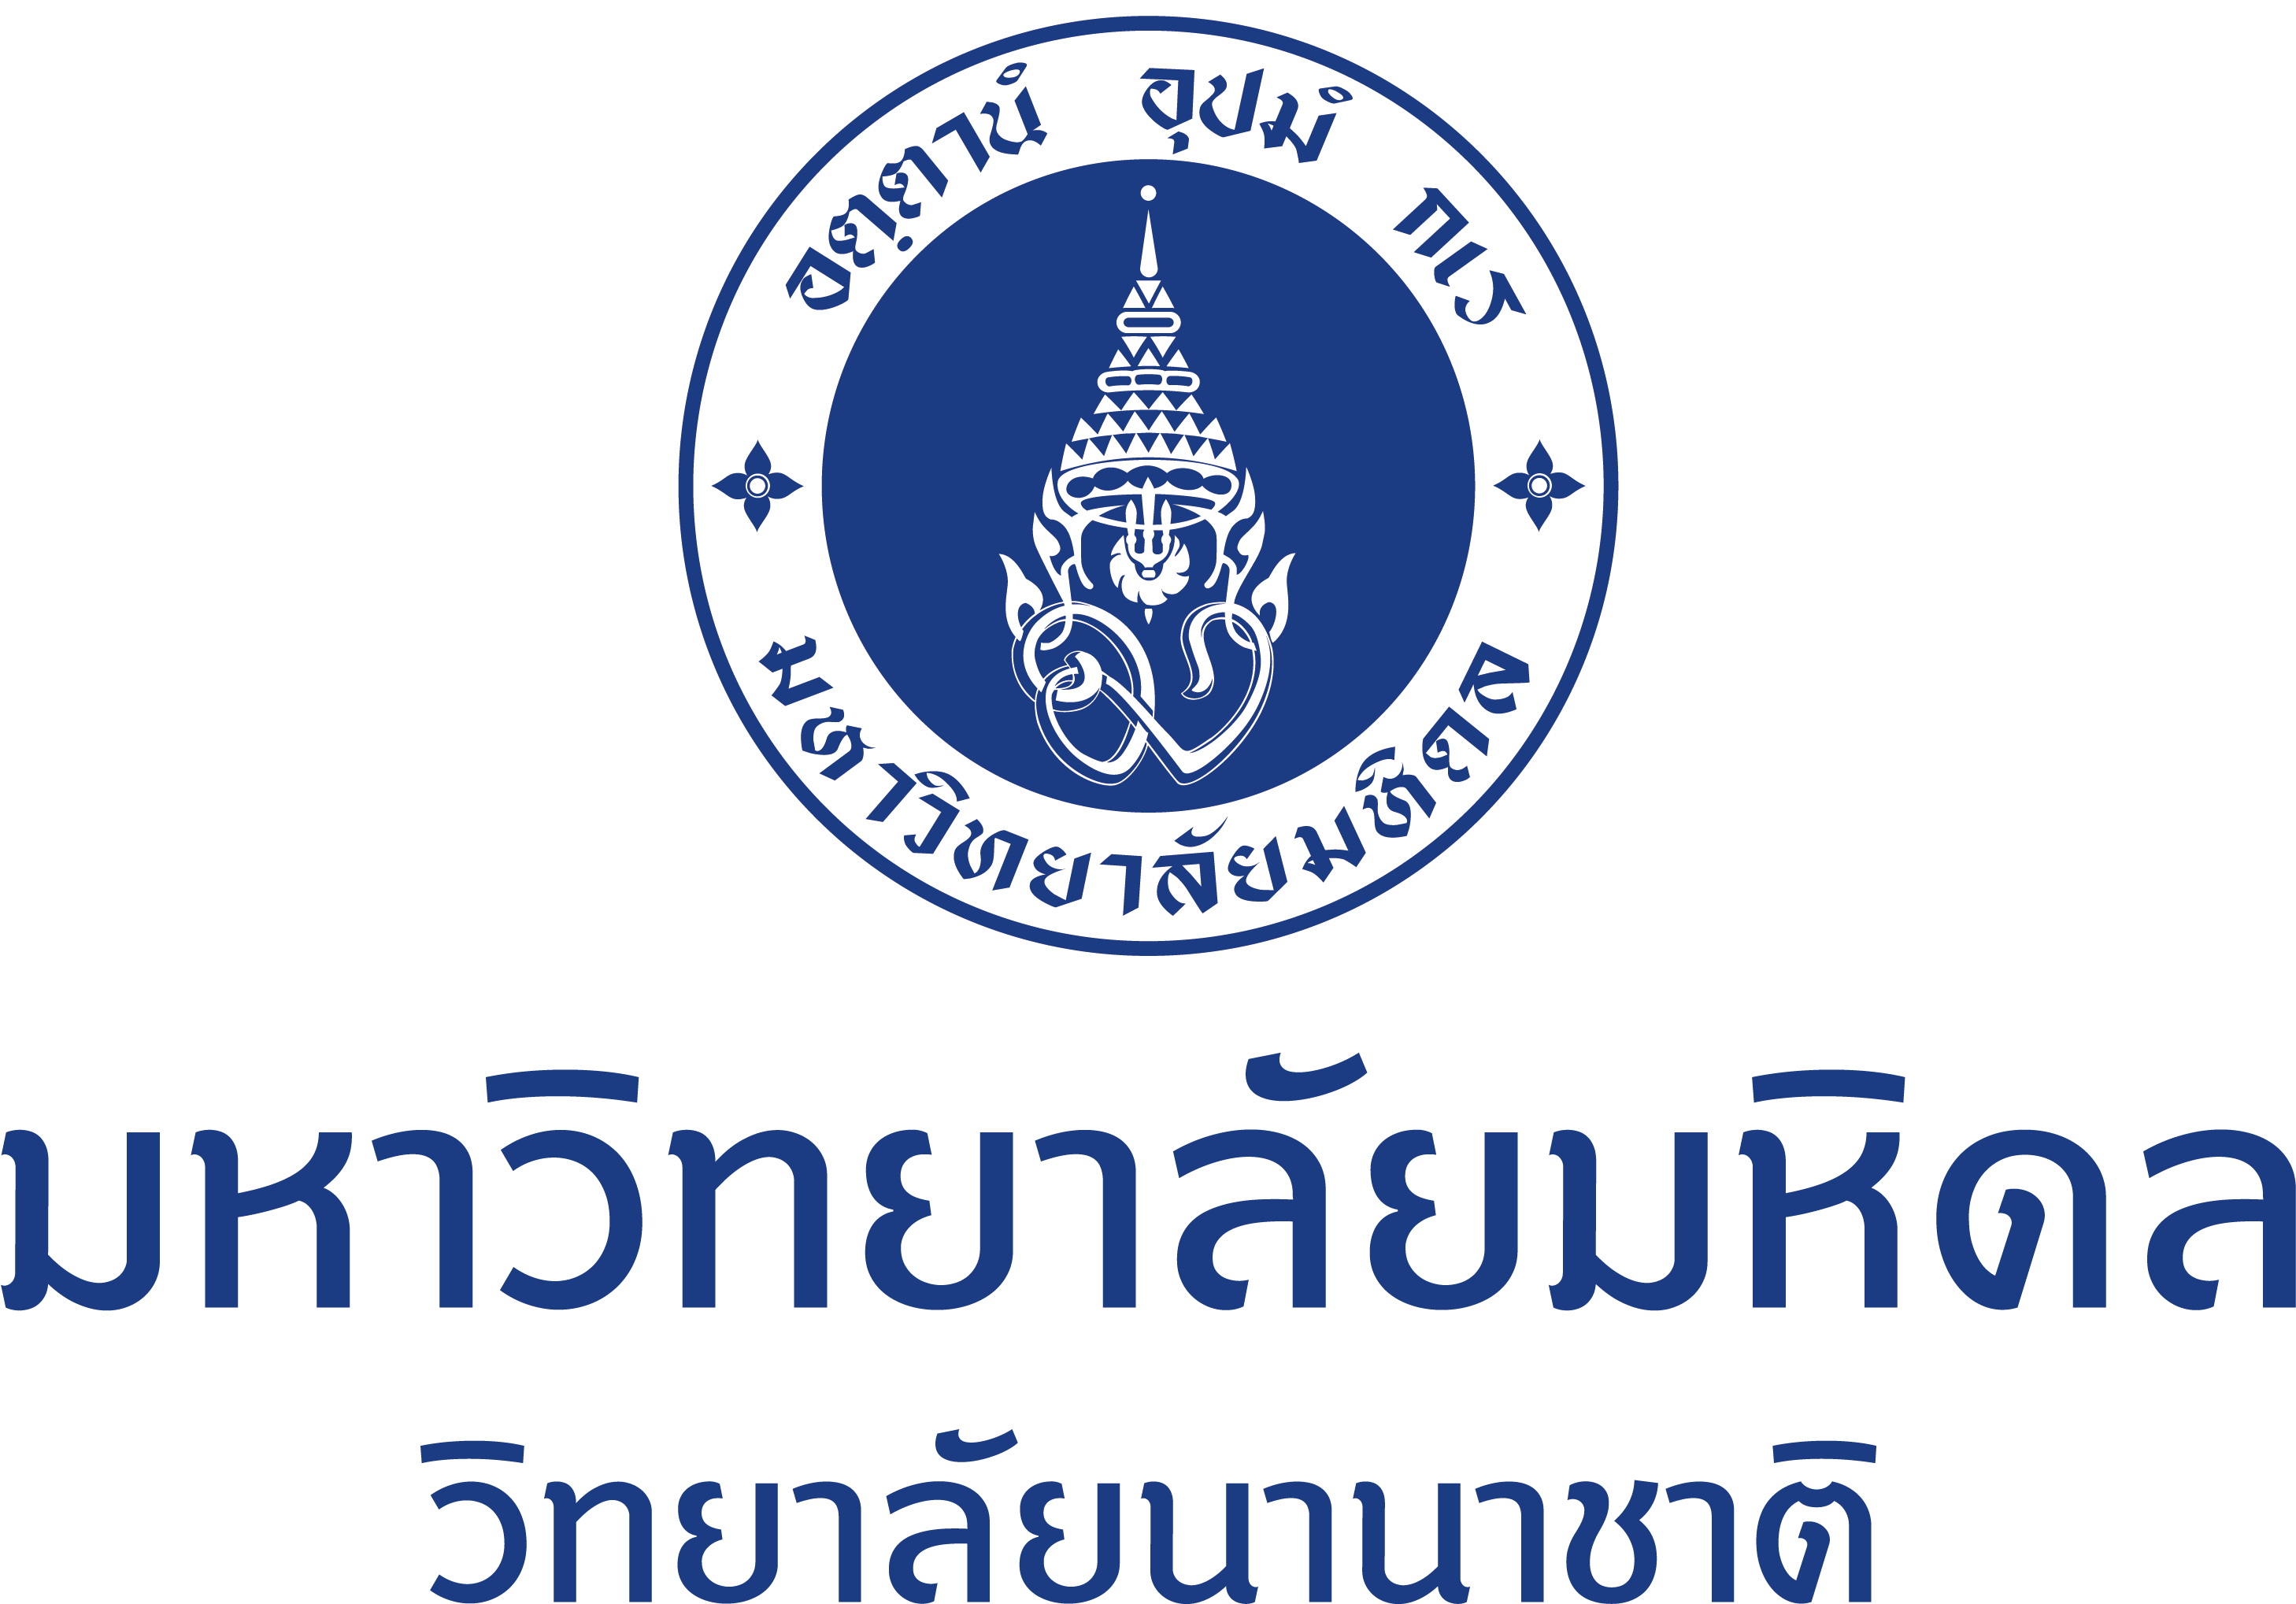 Jpg - Png - Mahidol University (3508x2611), Png Download